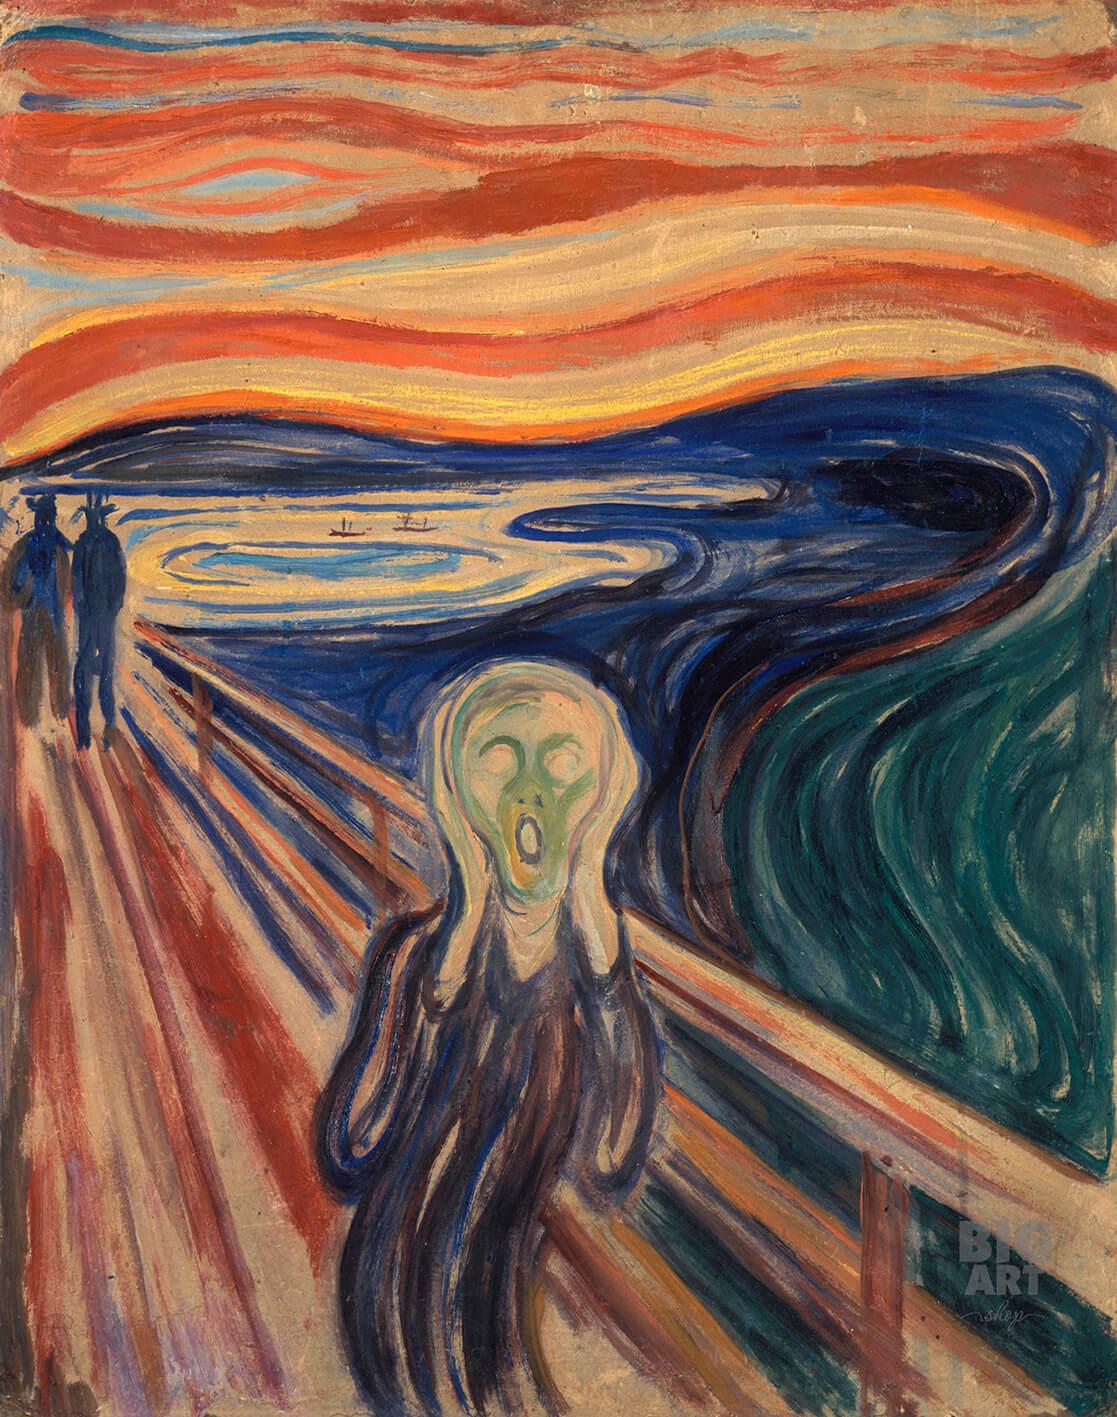 Pilt Edvard Munch - Do ɣlidodo 2